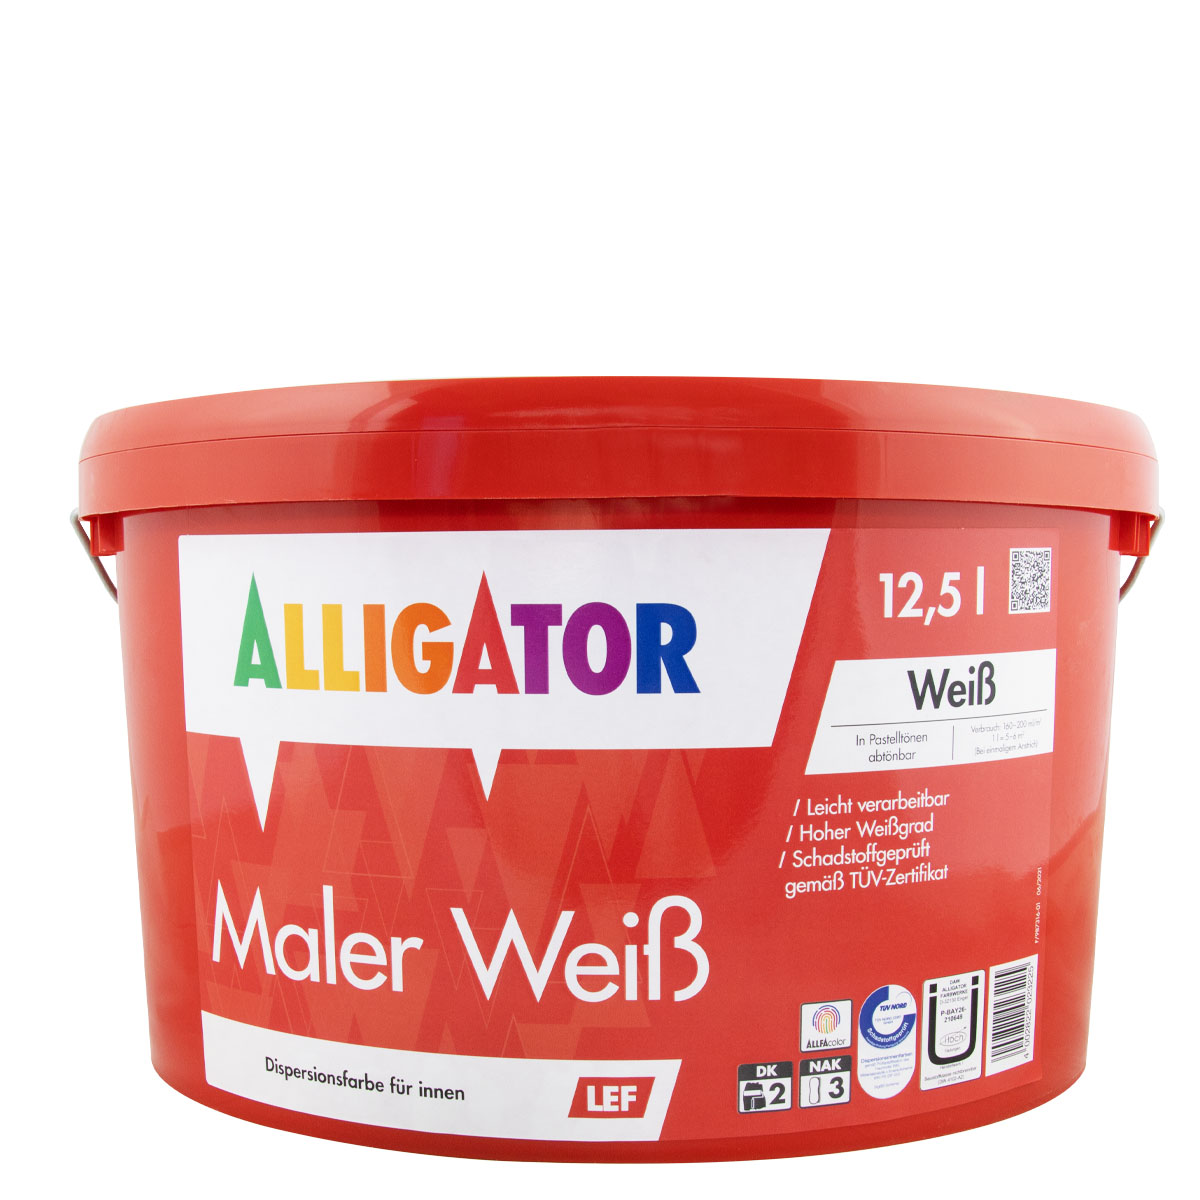 Alligator Maler Weiß LEF 12,5L, weiss